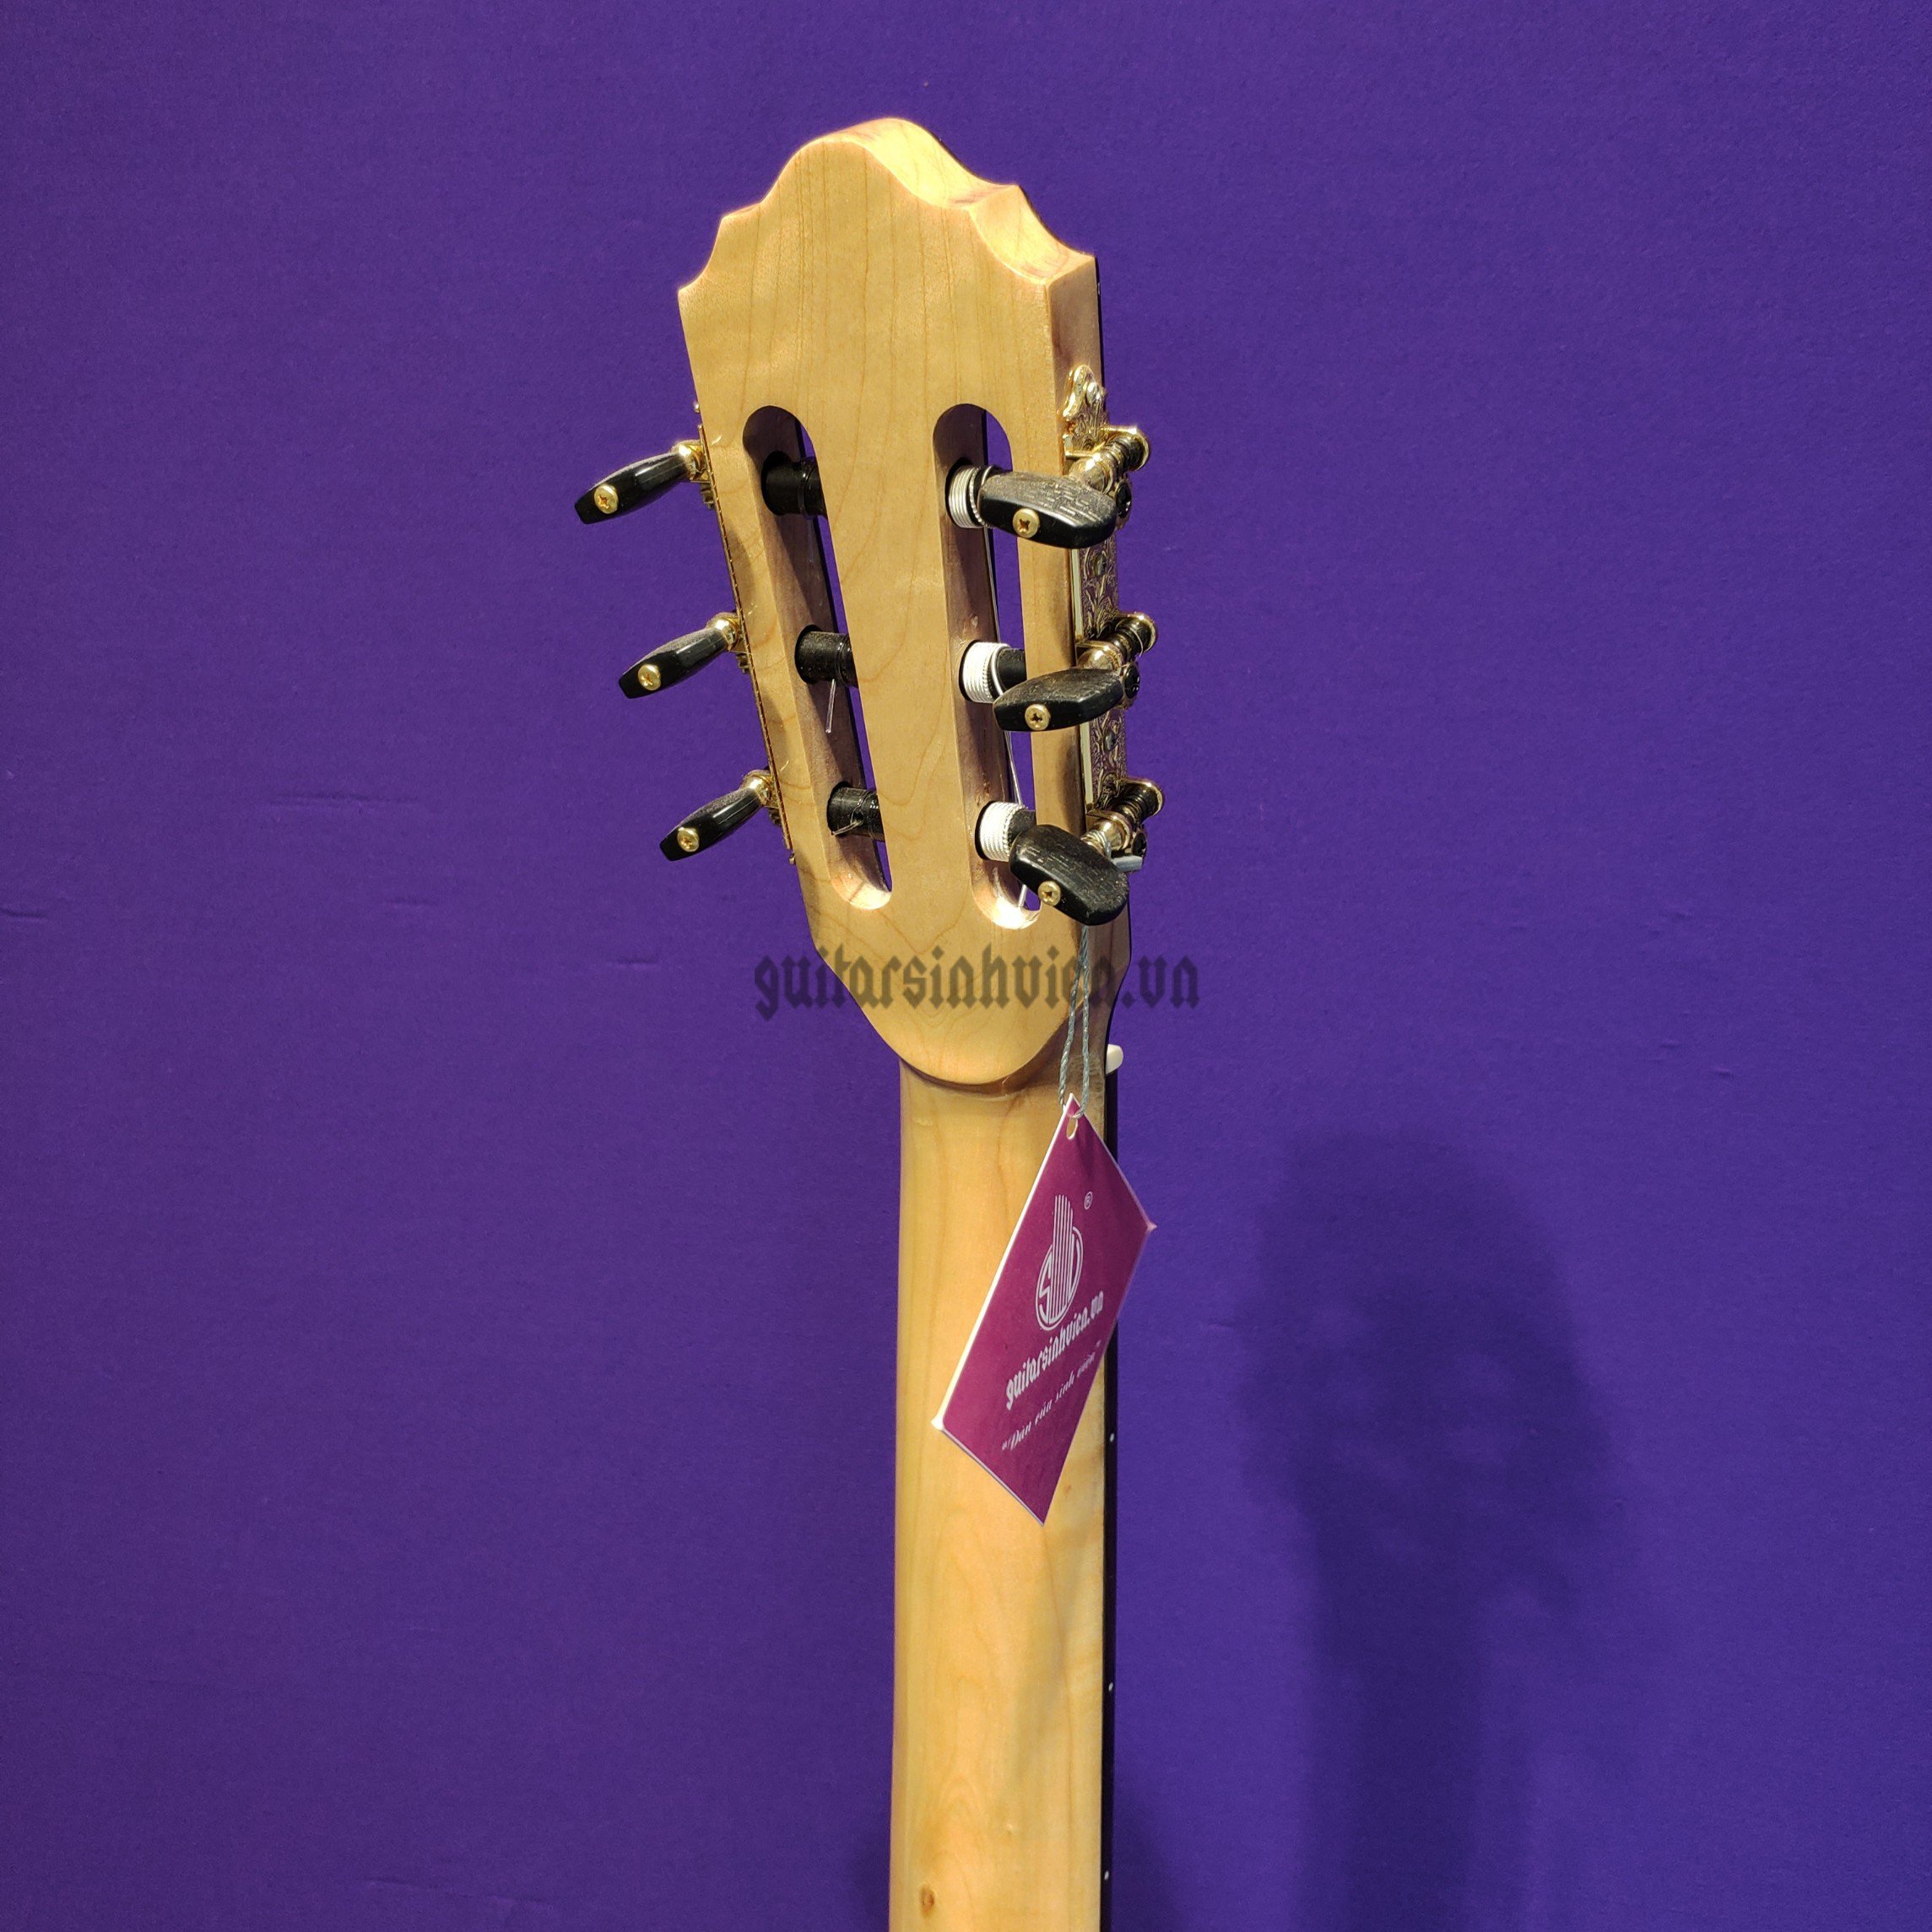 Đàn guitar classic gỗ cẩm Ấn cao cấp SV-C7